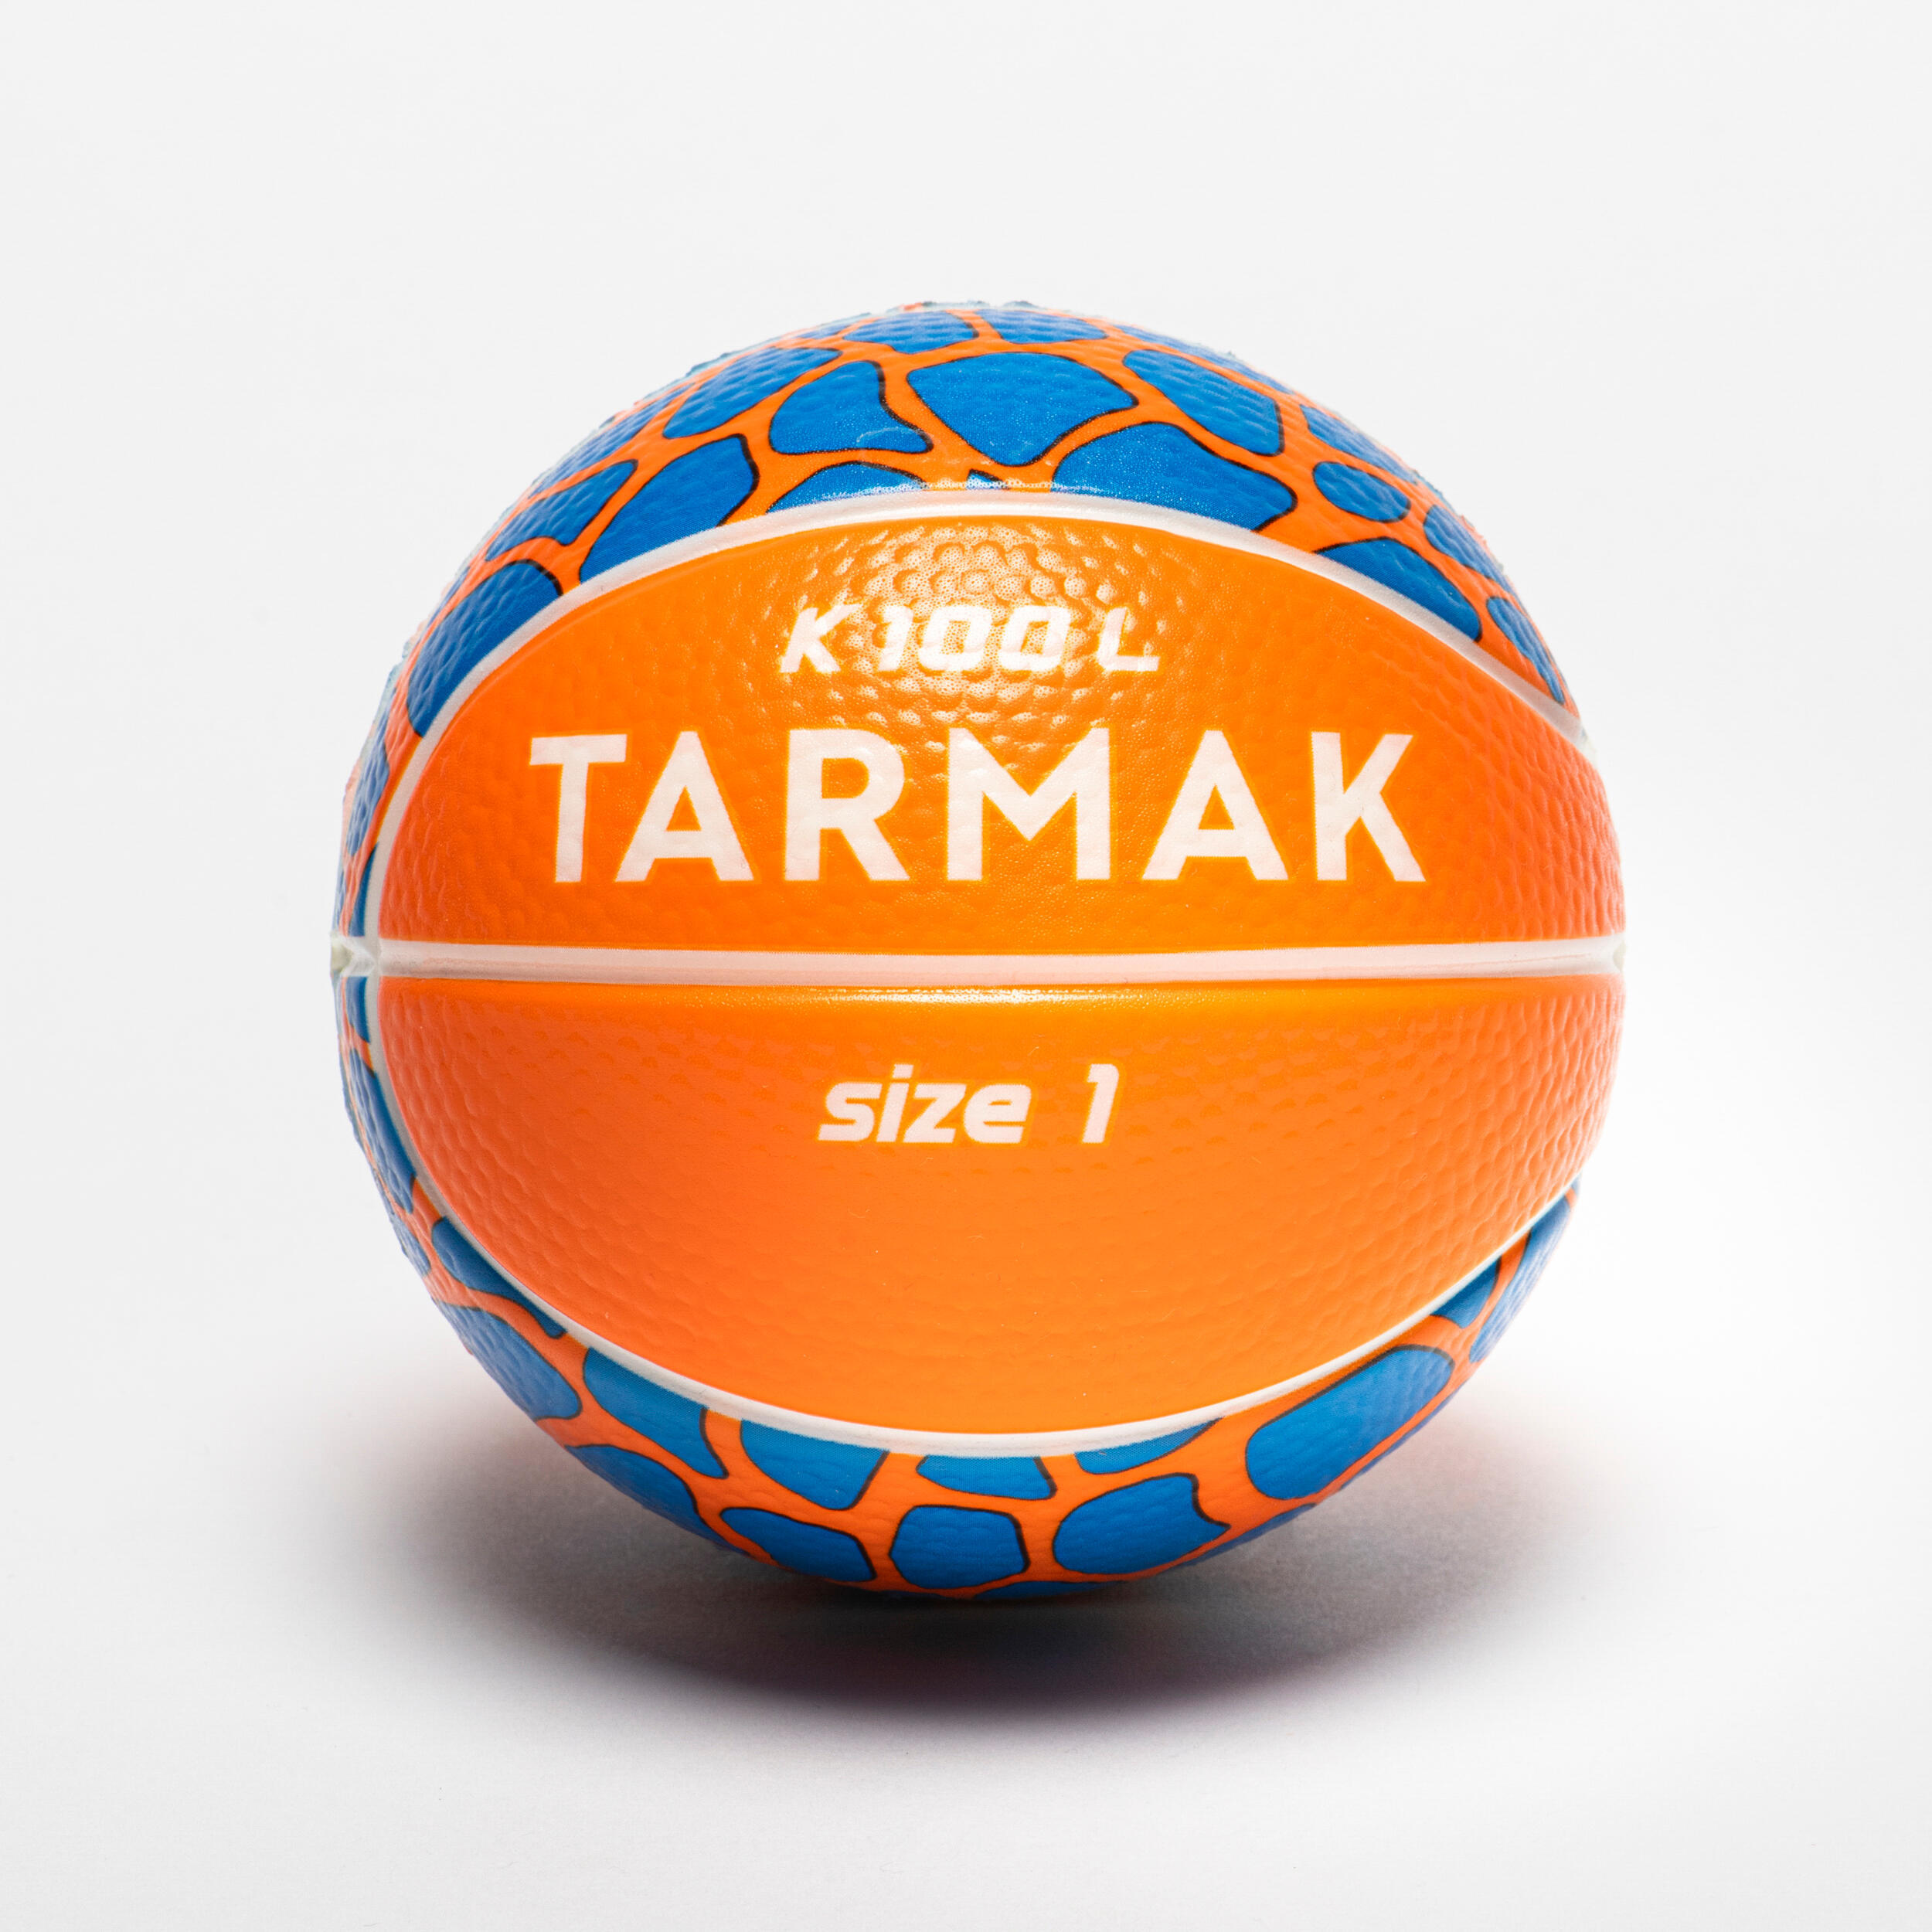 цена Детский баскетбольный мяч, размер 1, пена - K100 Mini Kids TARMAK, апельсин